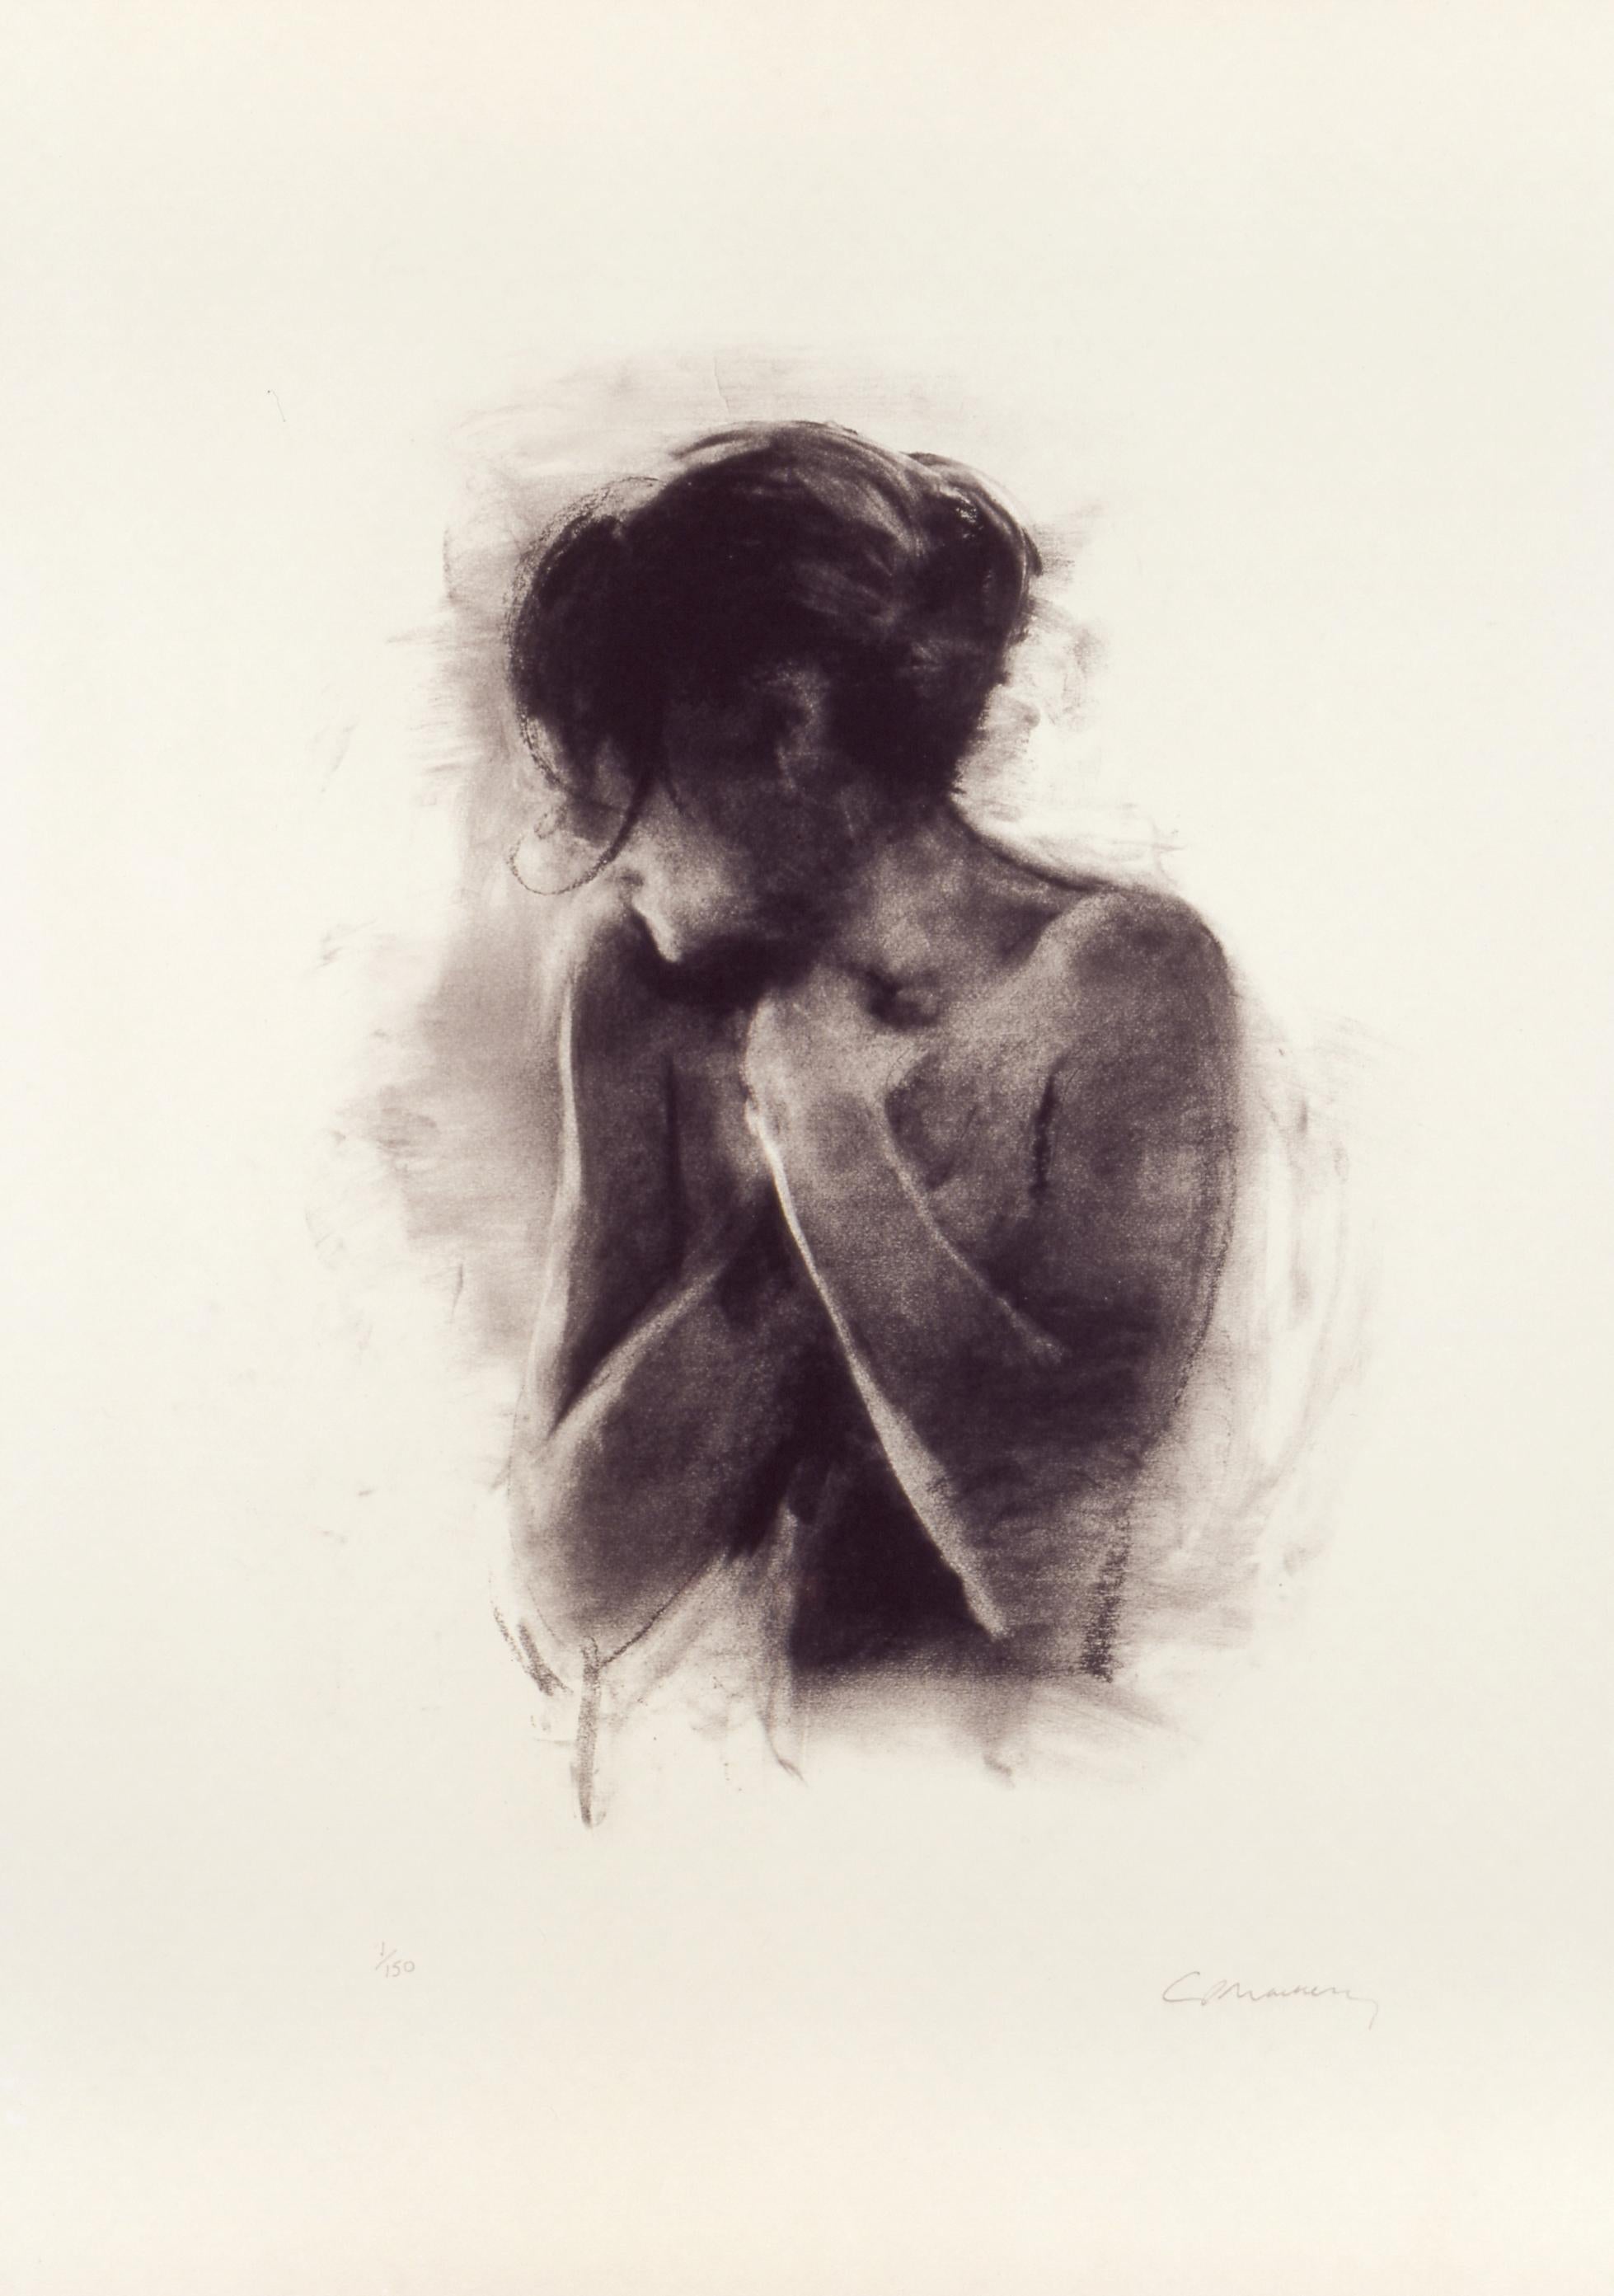 Antonia - Édition limitée, figuratif, contemporain, semi-nu, femme, féminine - Print de Charlie Mackesy